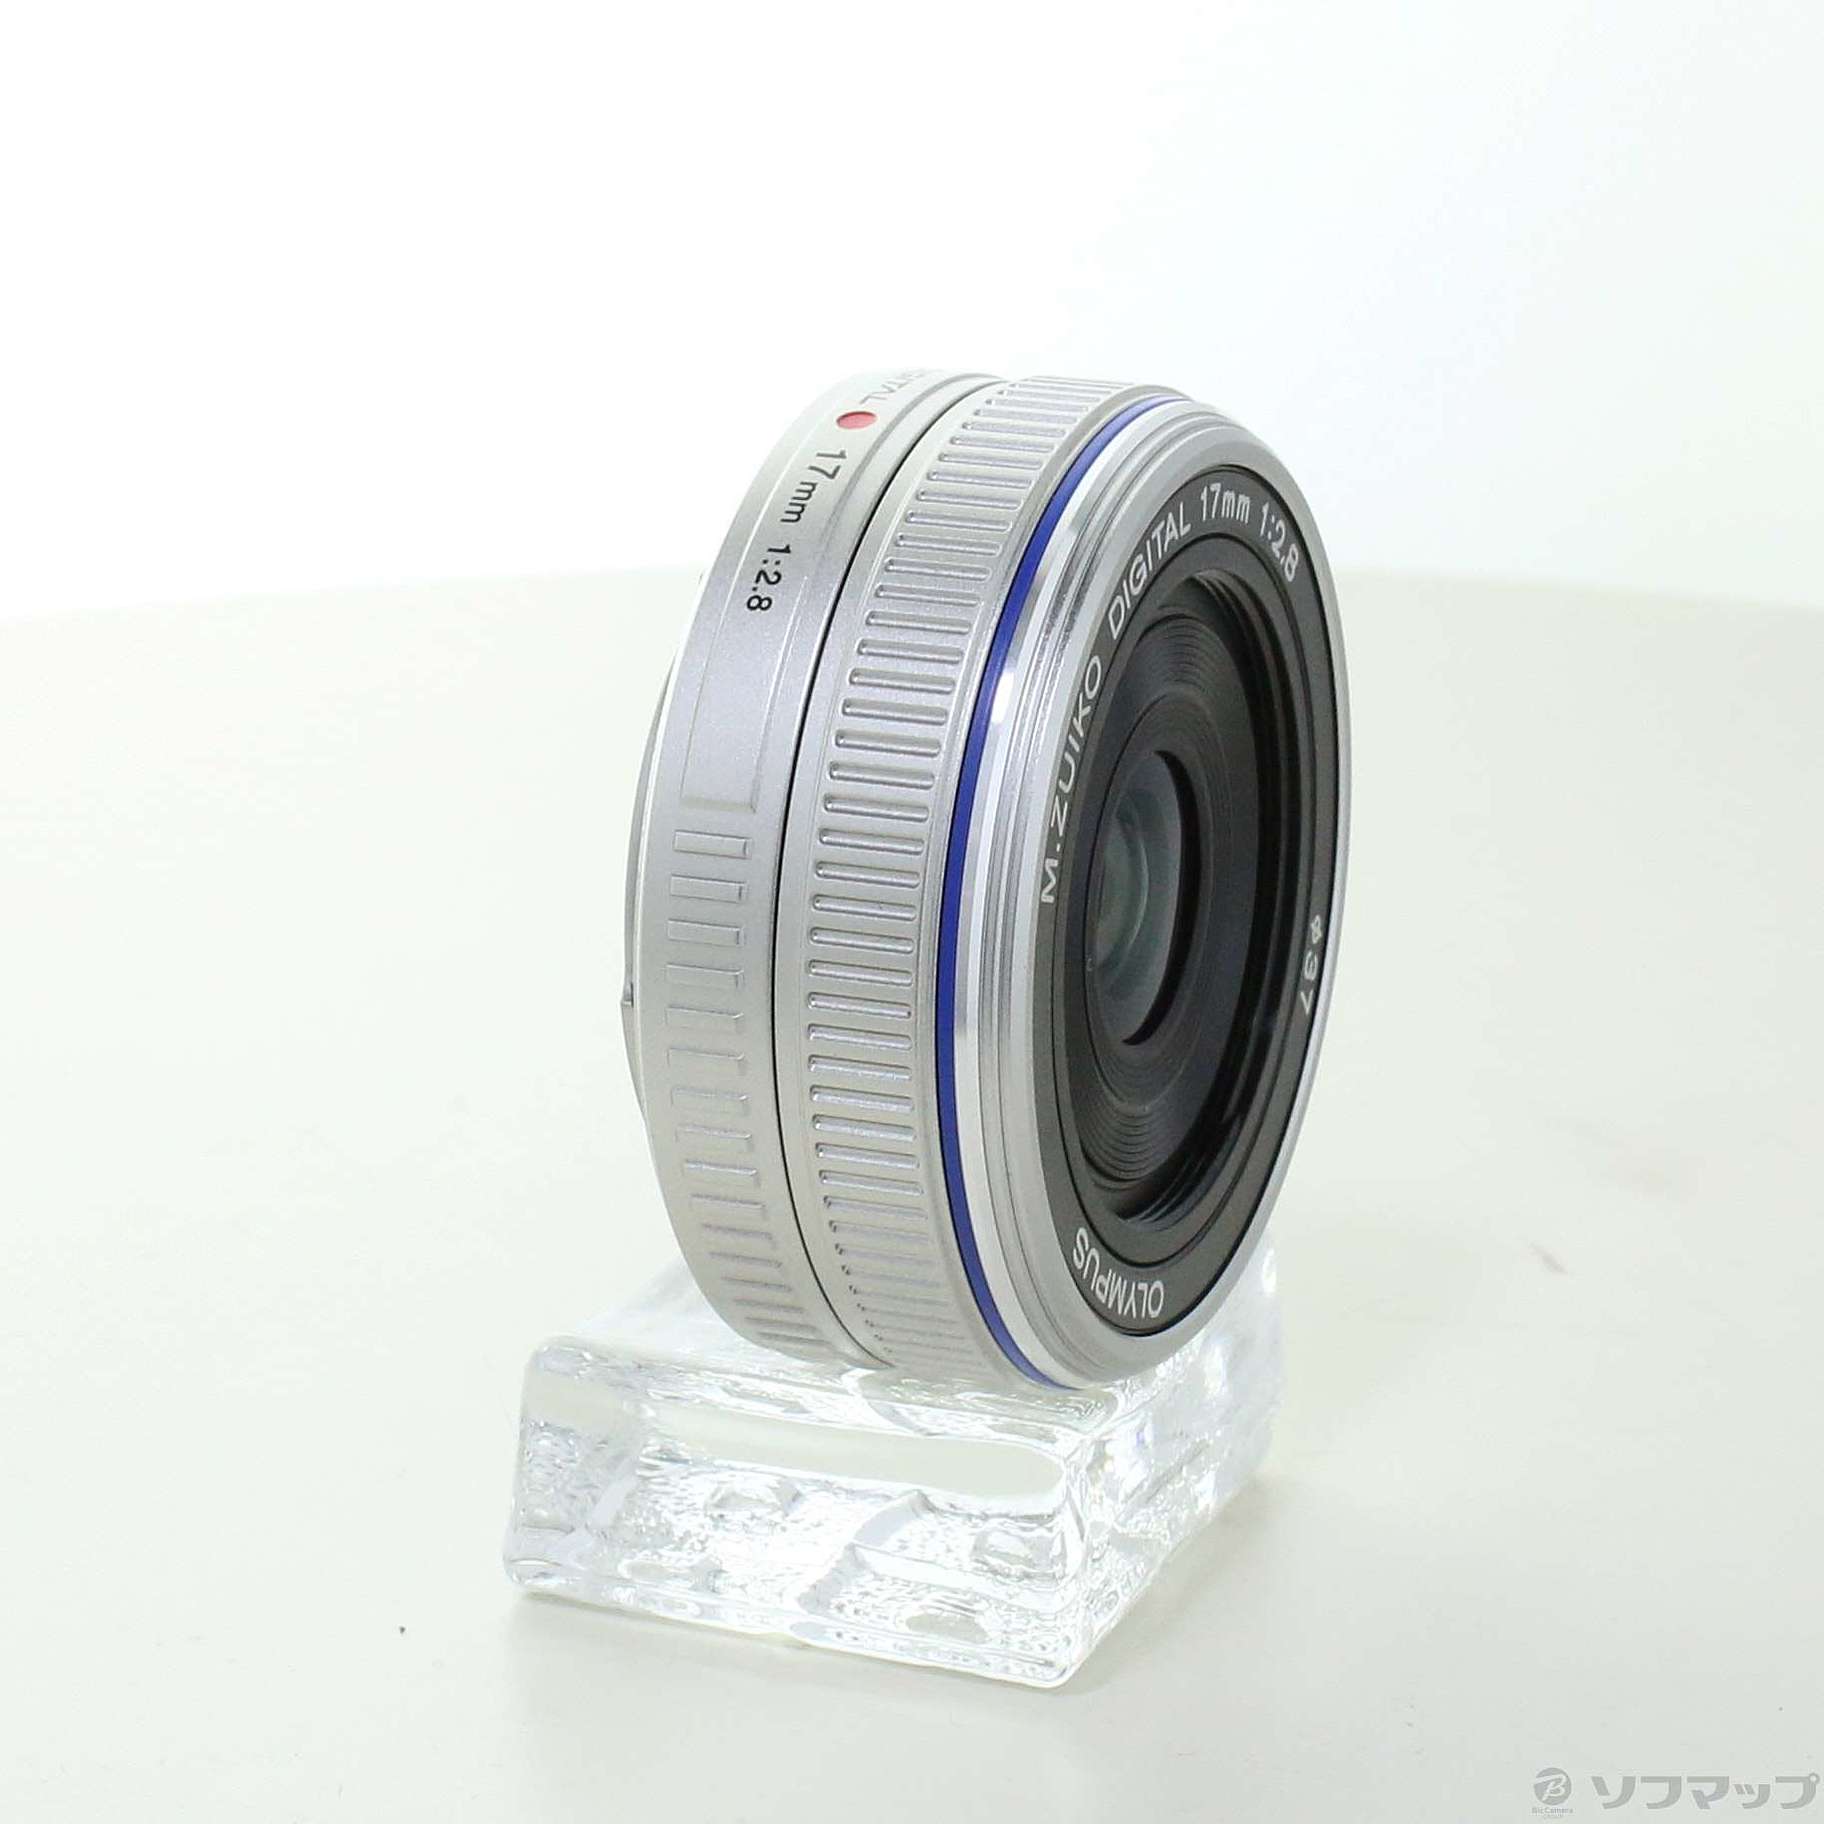 オリンパス17mmf2.8シルバーレンズ(単焦点) - レンズ(単焦点)